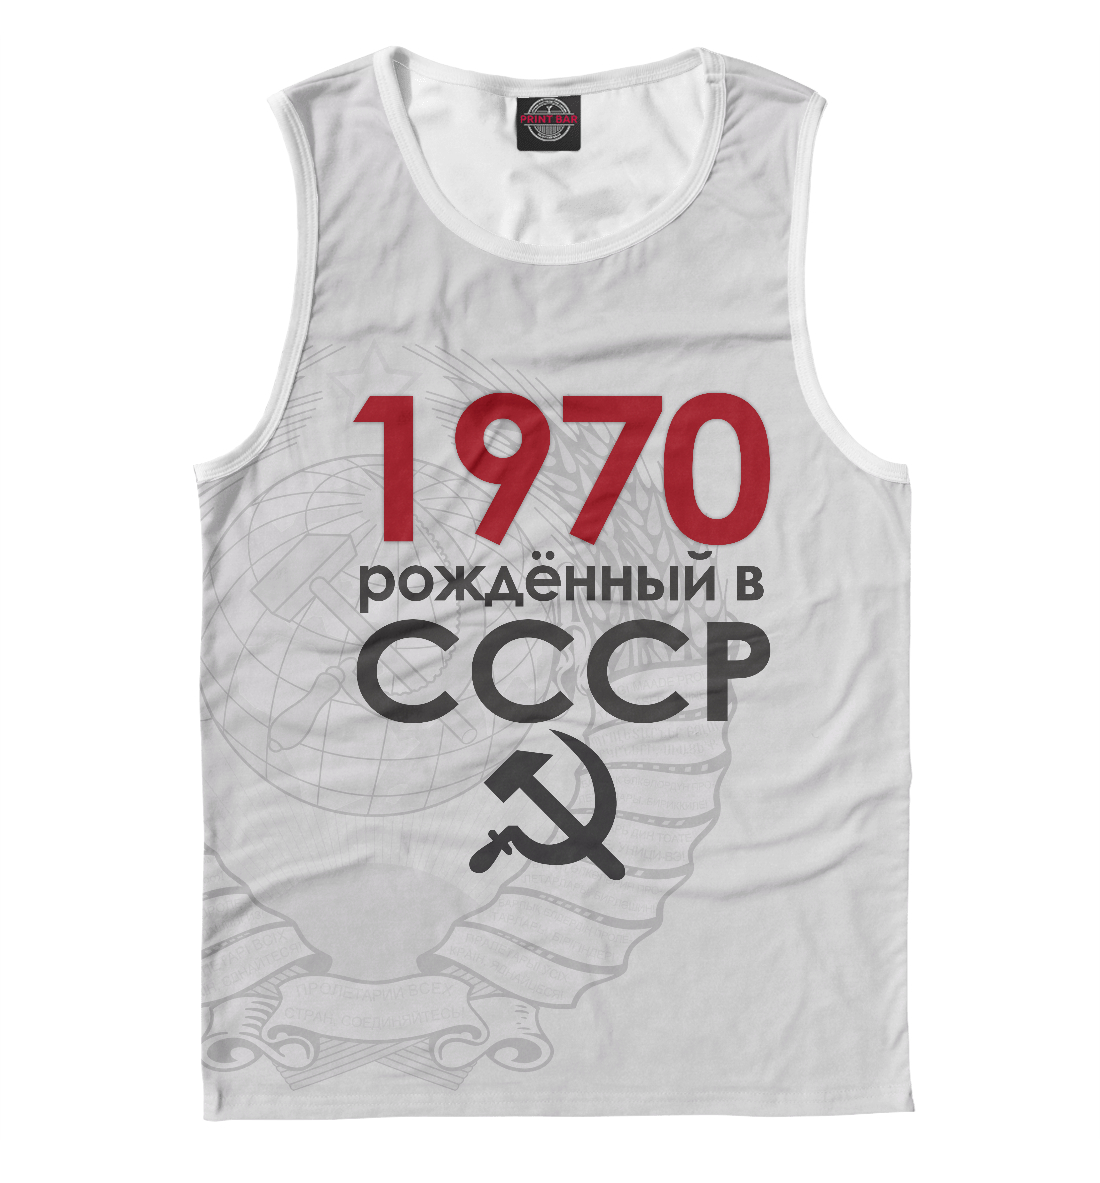 

1970 Рожденный в СССР